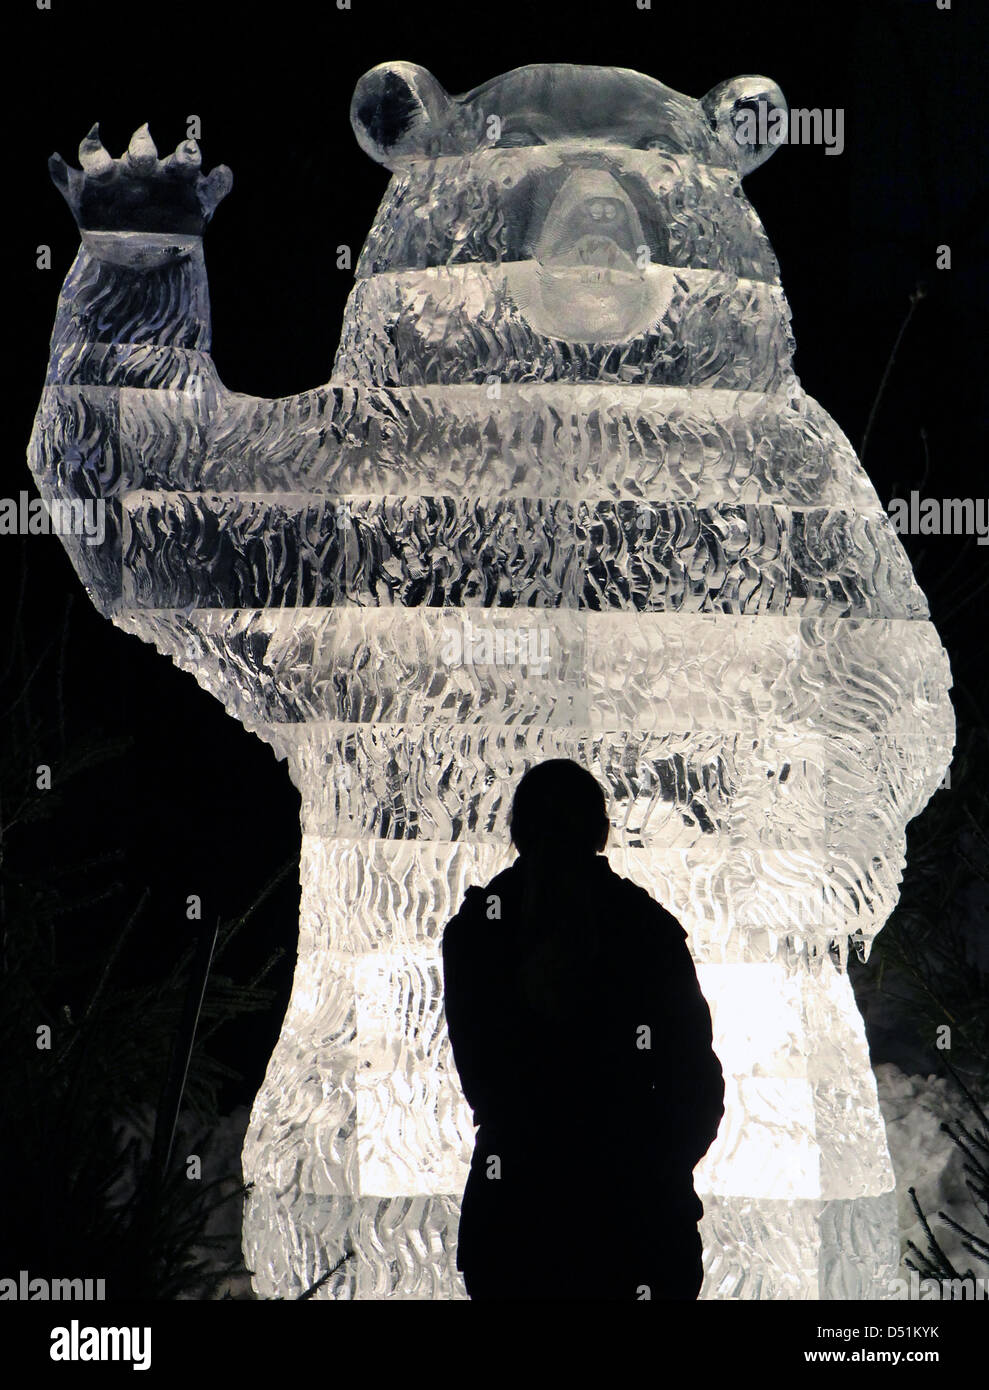 Die ersten Gäste kommen an der Eis-Skulpturenausstellung im Freizeitpark Karls in Roevershagen, Deutschland, 21. Dezember 2010. Die Ausstellung wird am 25. Dezember 2010 offiziell eröffnet. Foto: Bernd Wuestneck Stockfoto